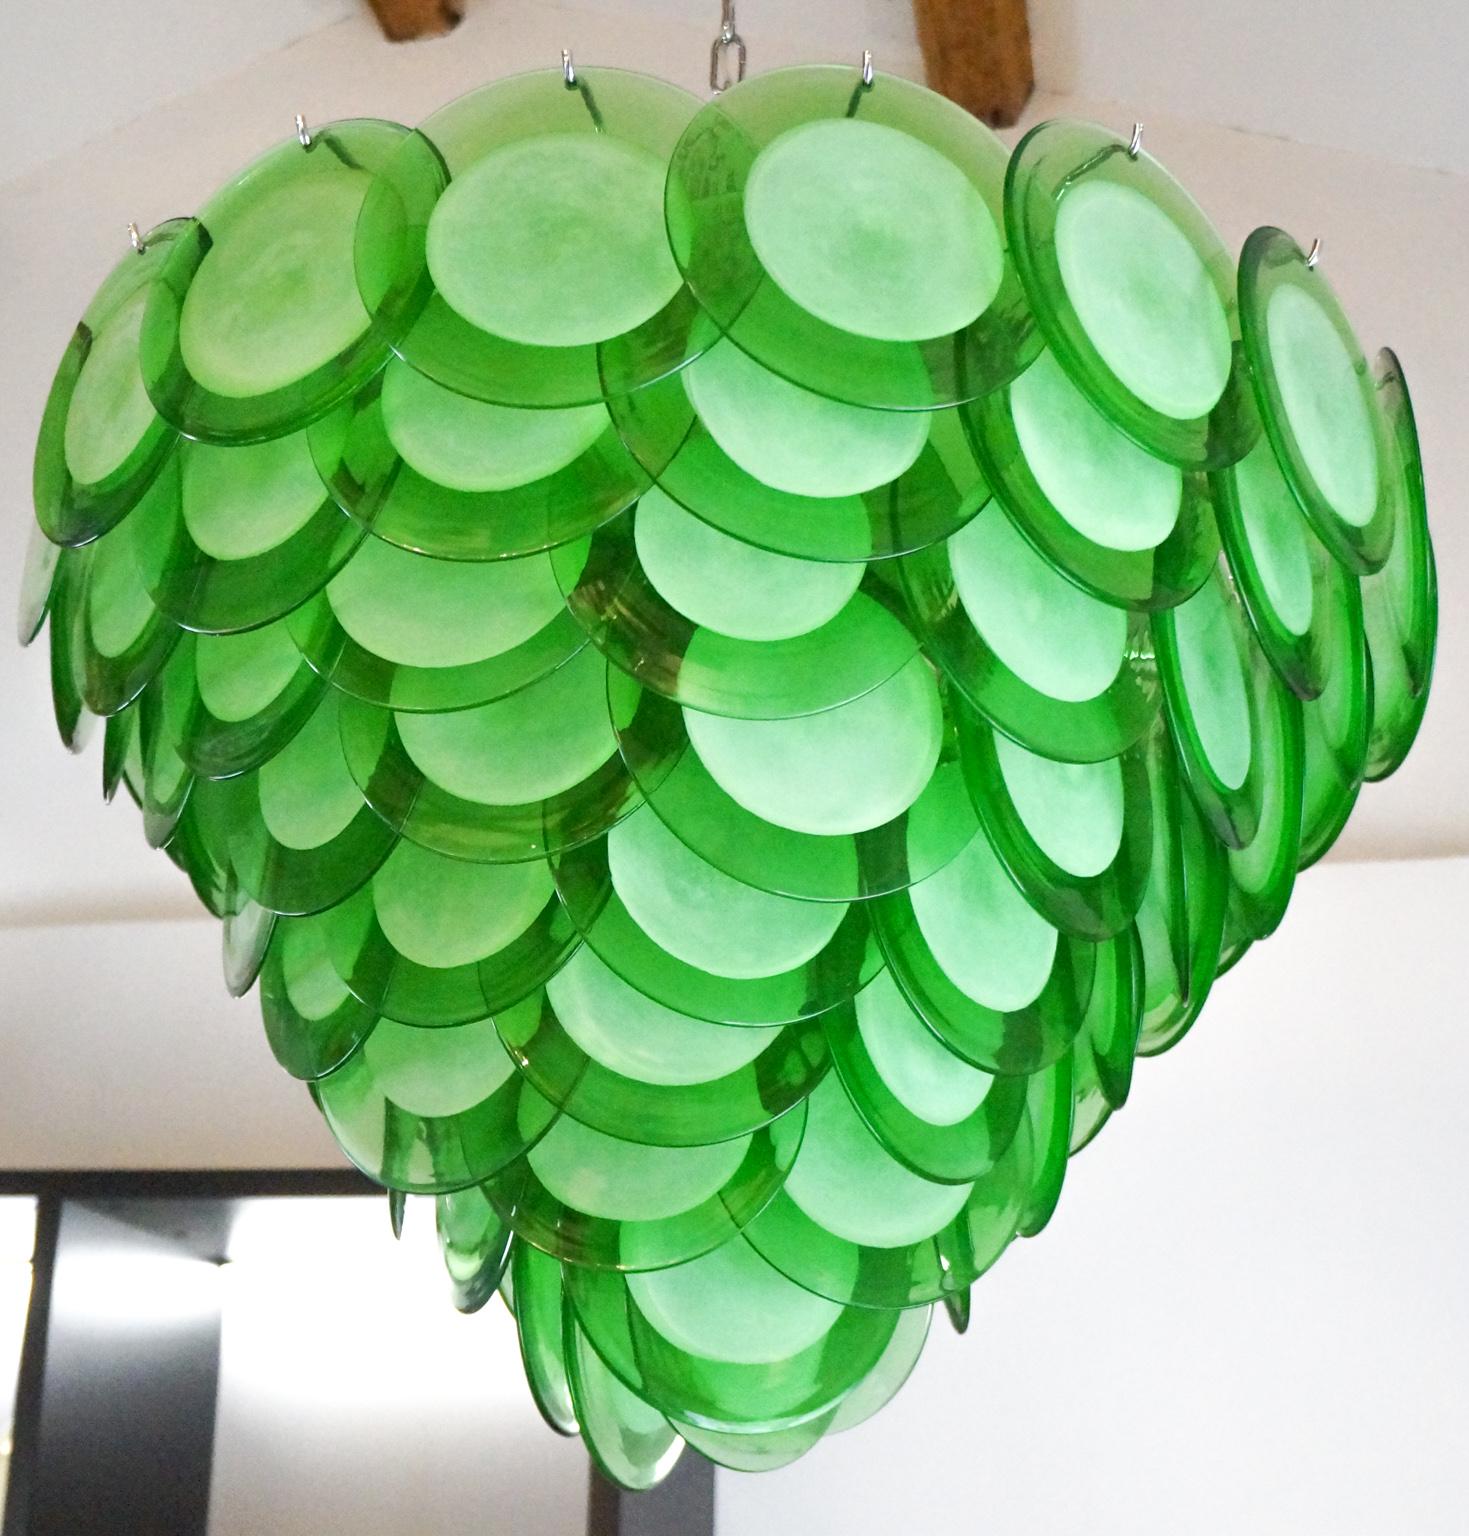 Regardez ce lustre coloré, composé de 90 éléments en verre vert qui vous rendront fou. Il serait capable de donner de la joie même à une pièce blanche minimale.
Dans l'ensemble, il s'agit d'un lustre très simple mais impressionnant.
Elle se